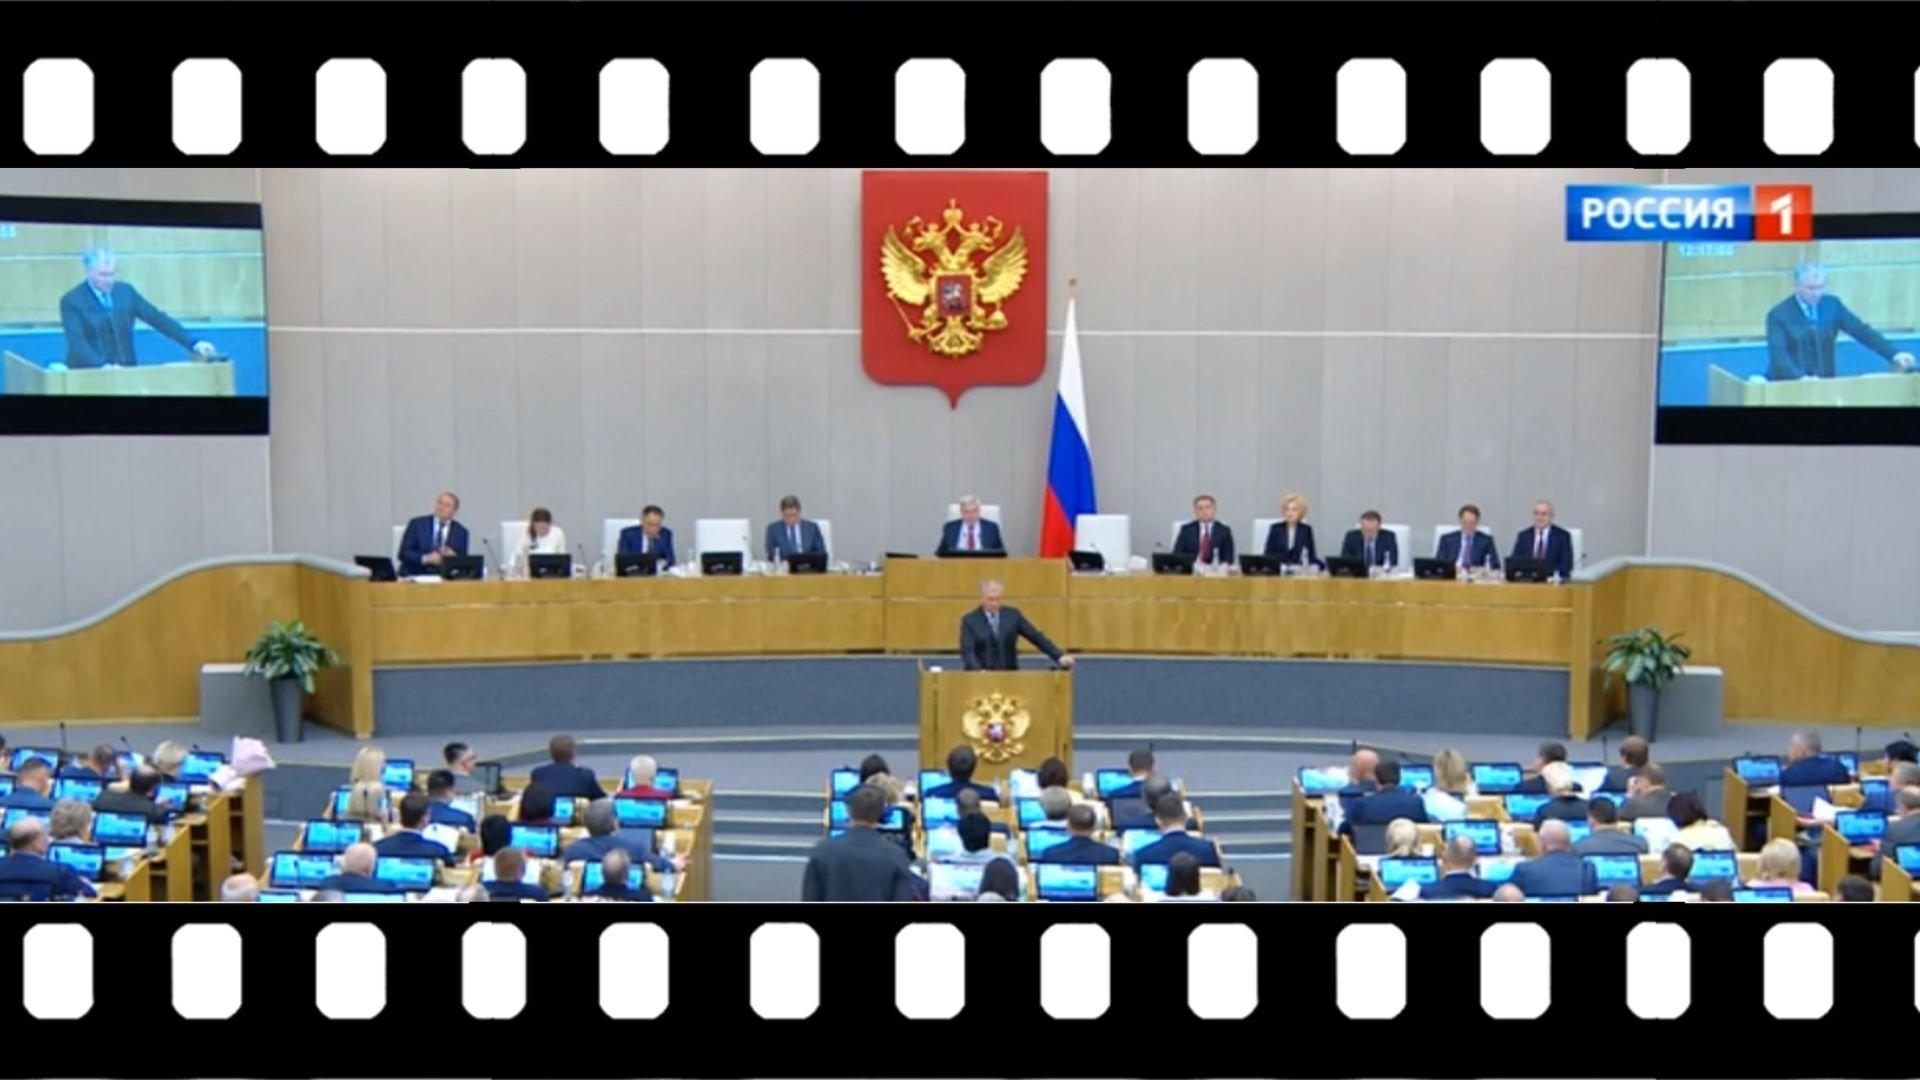 Posłowie na sali posiedzeń Dumy